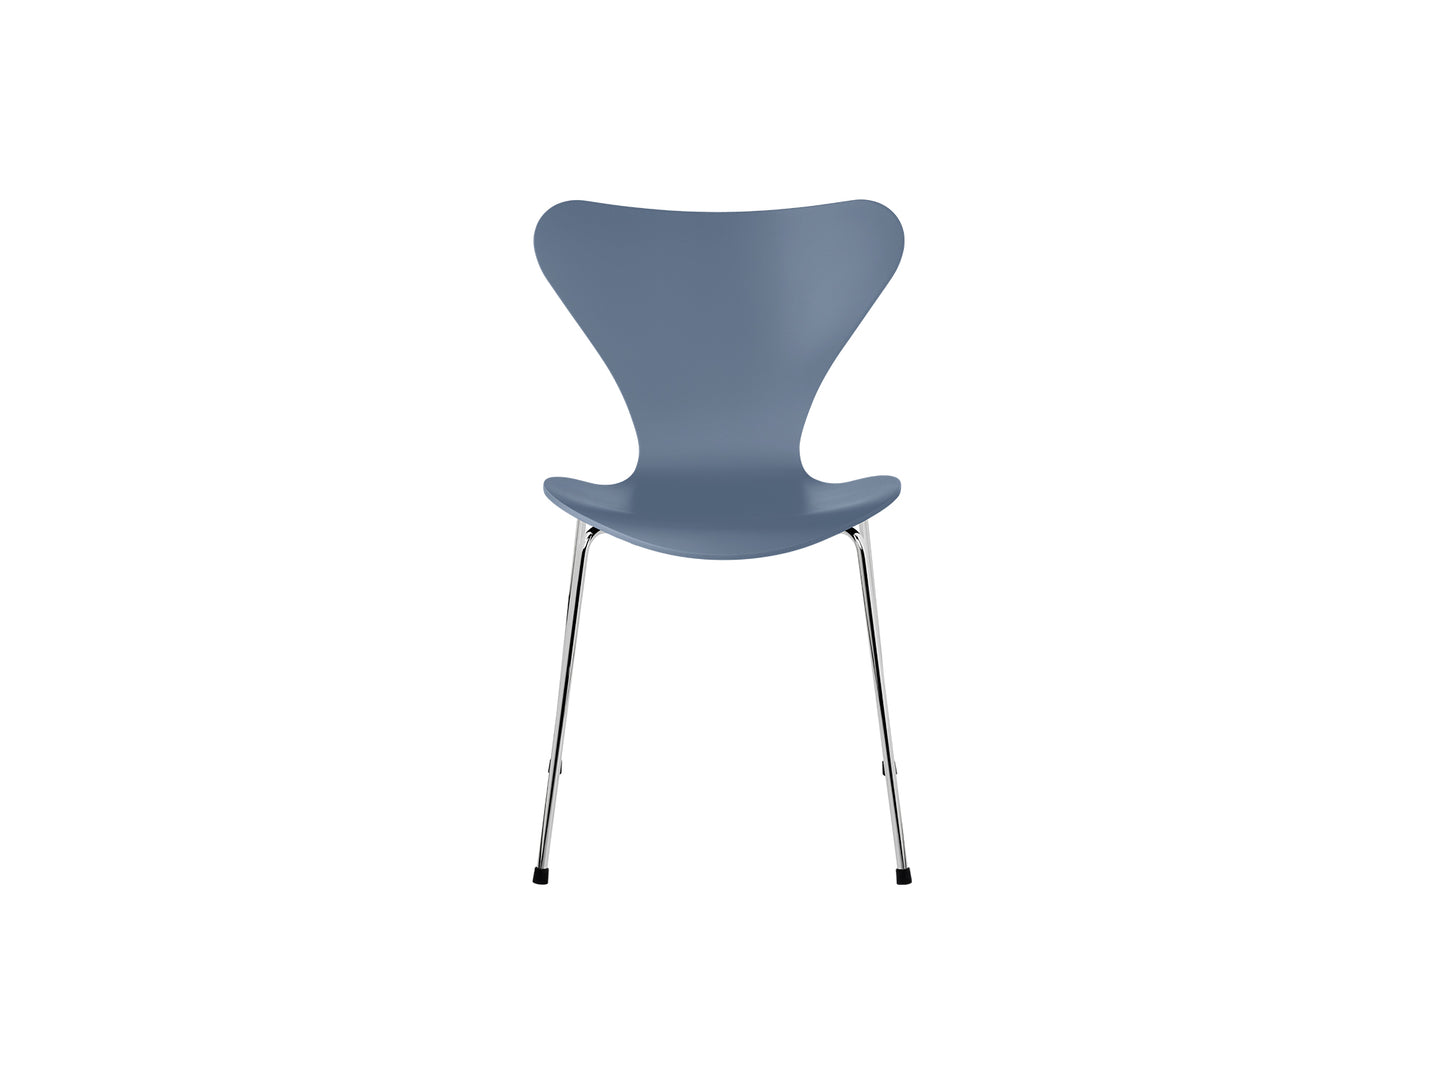 Series 7™ 3107 Dining Chair by Fritz Hansen - Dusk Blue Lacquered Veneer Shell / Chromed Steel